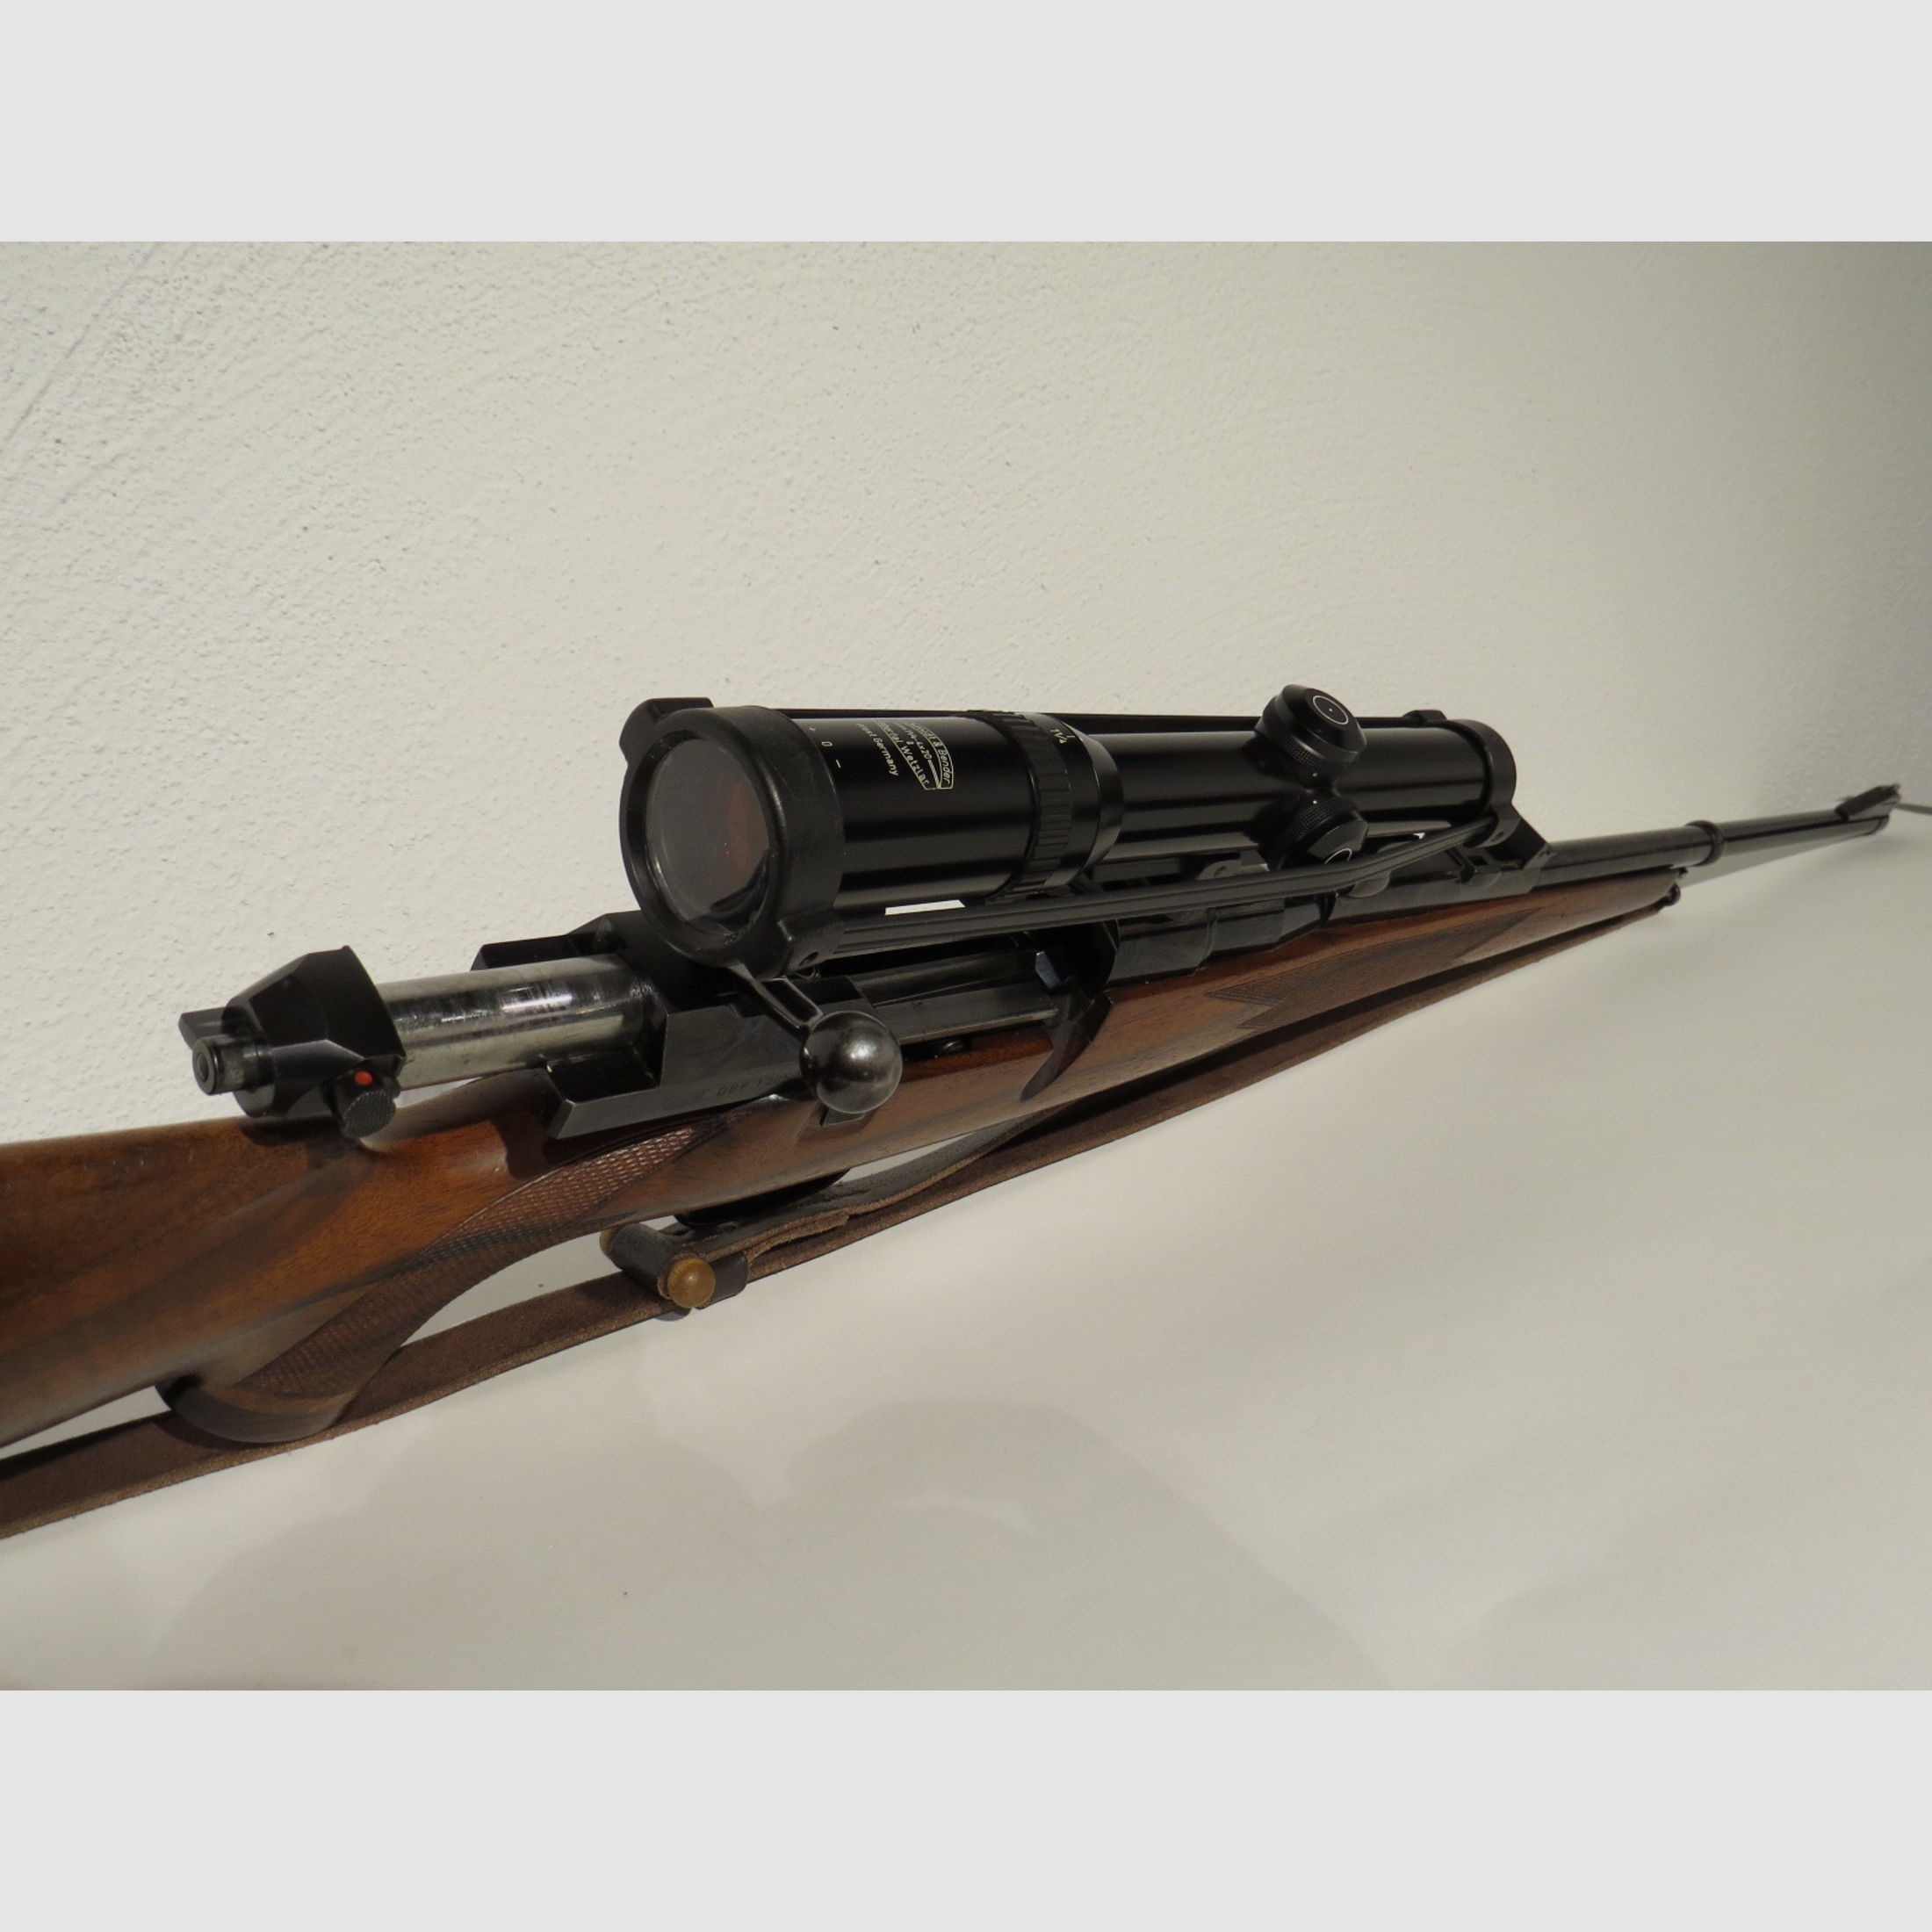 Mauser  Modell 66 - 7x64 - Schmidt Bender  1 1/4-4x20